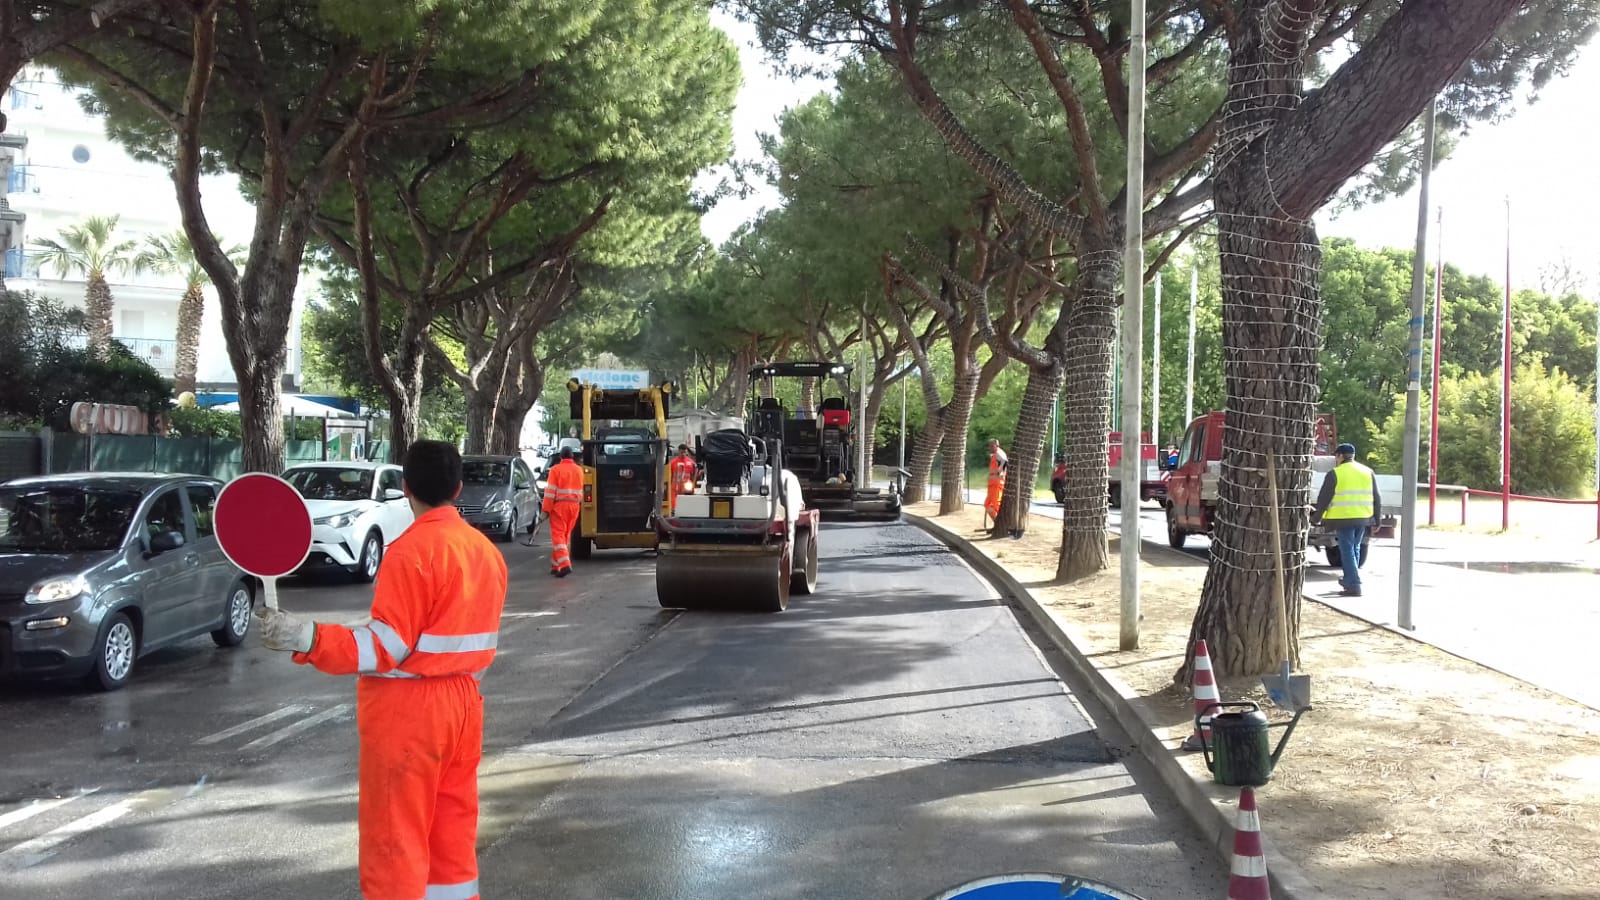 Un piano di manutenzione straordinaria per le strade di Riccione. L’assessore Imola: “Mai impiegate così tante squadre di operai e imprese per decoro e sicurezza”